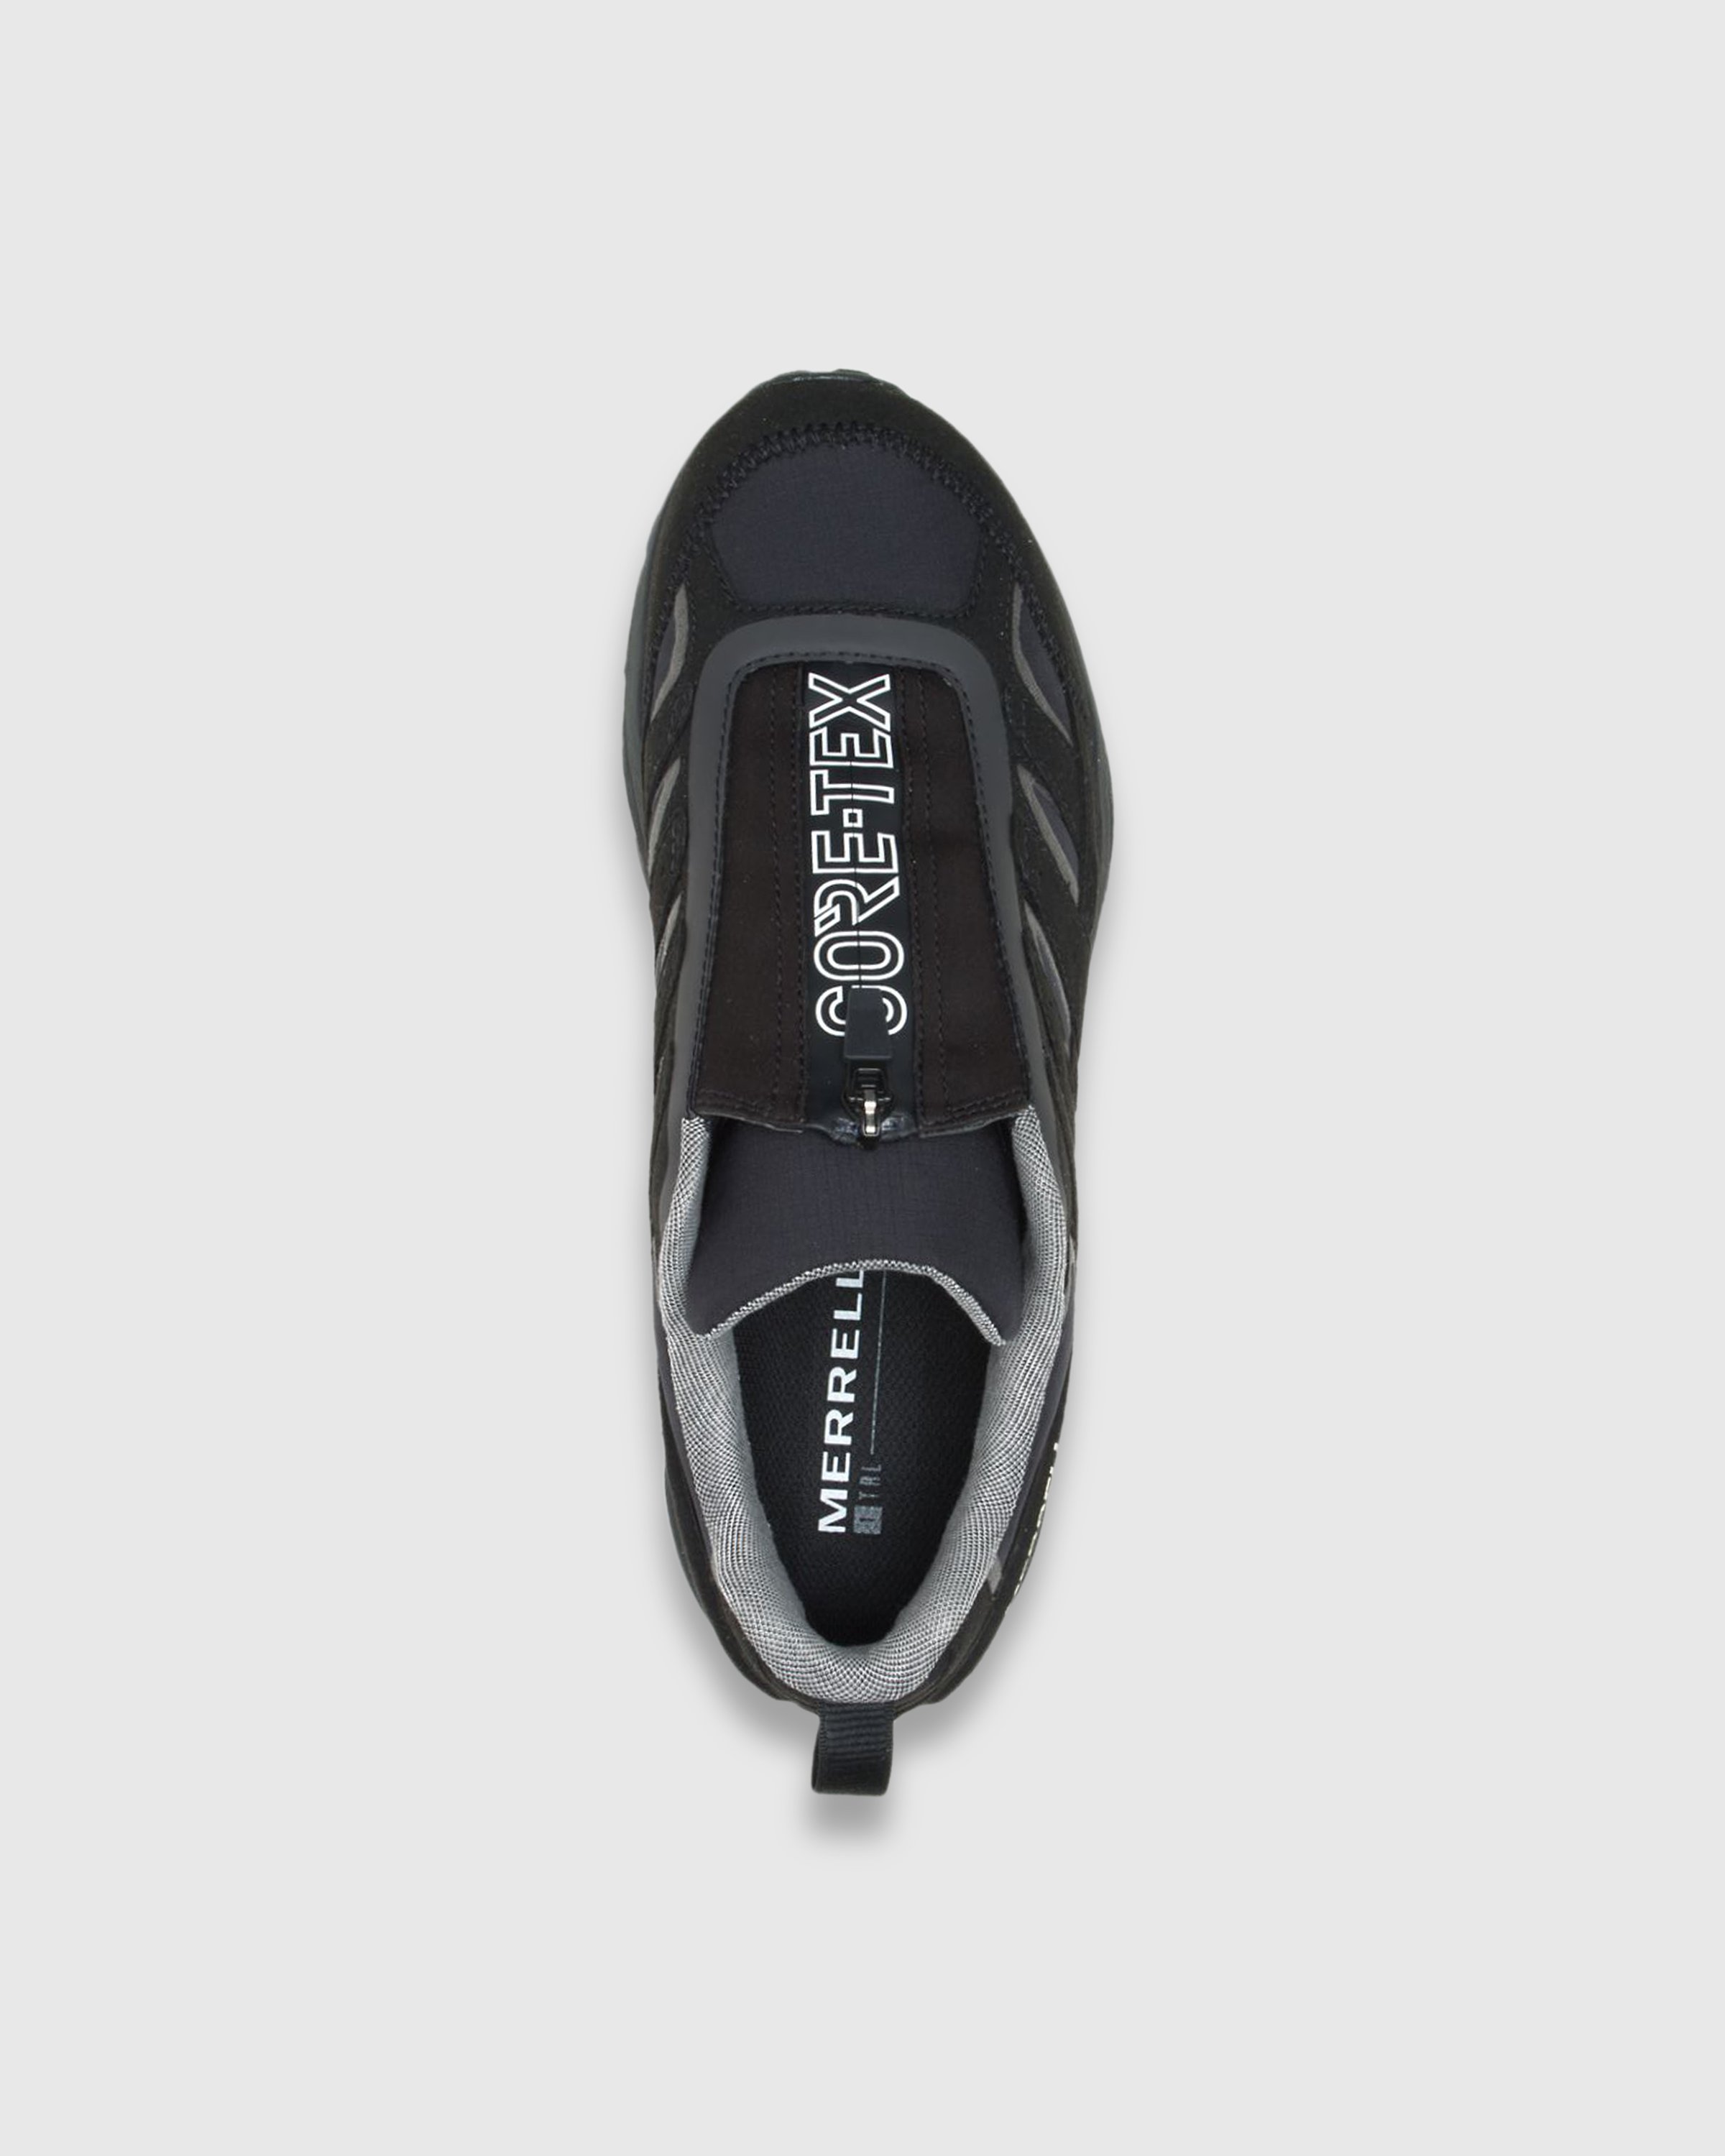 Merrell - Moab Hybrid Zip GORE-TEX 1TRL Black - Footwear - Black - Image 4